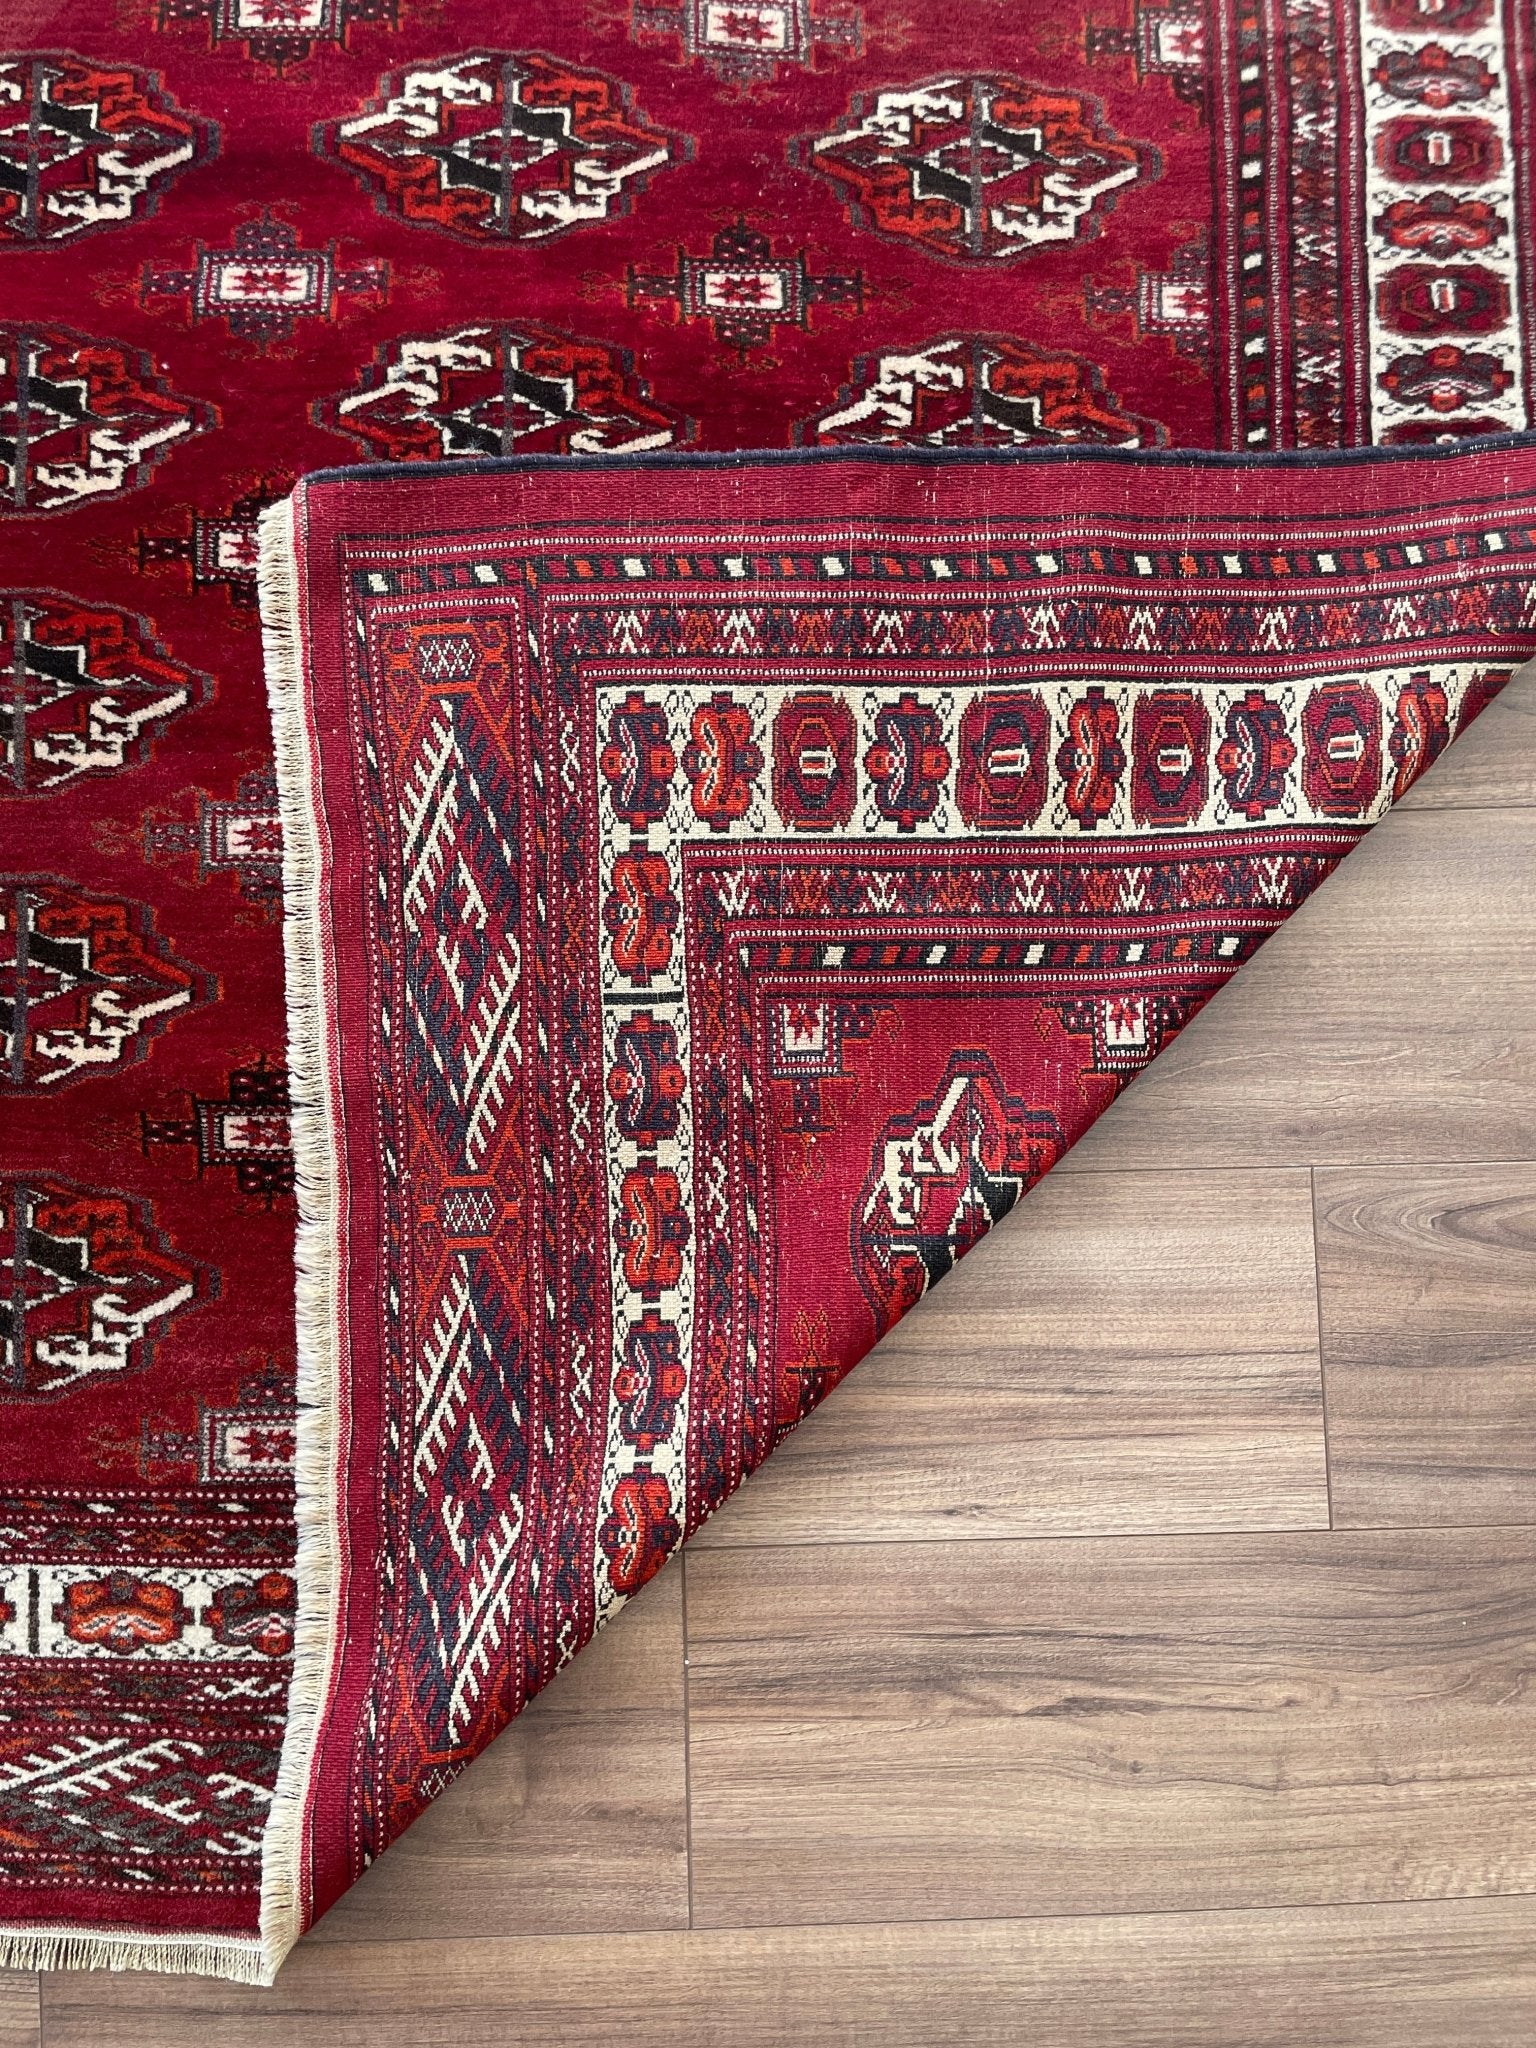 bukhara turkmen rug. Small vintage rug scatter rug Oriental rug shop San Francisco Bay area. Buy vintage rug shop online